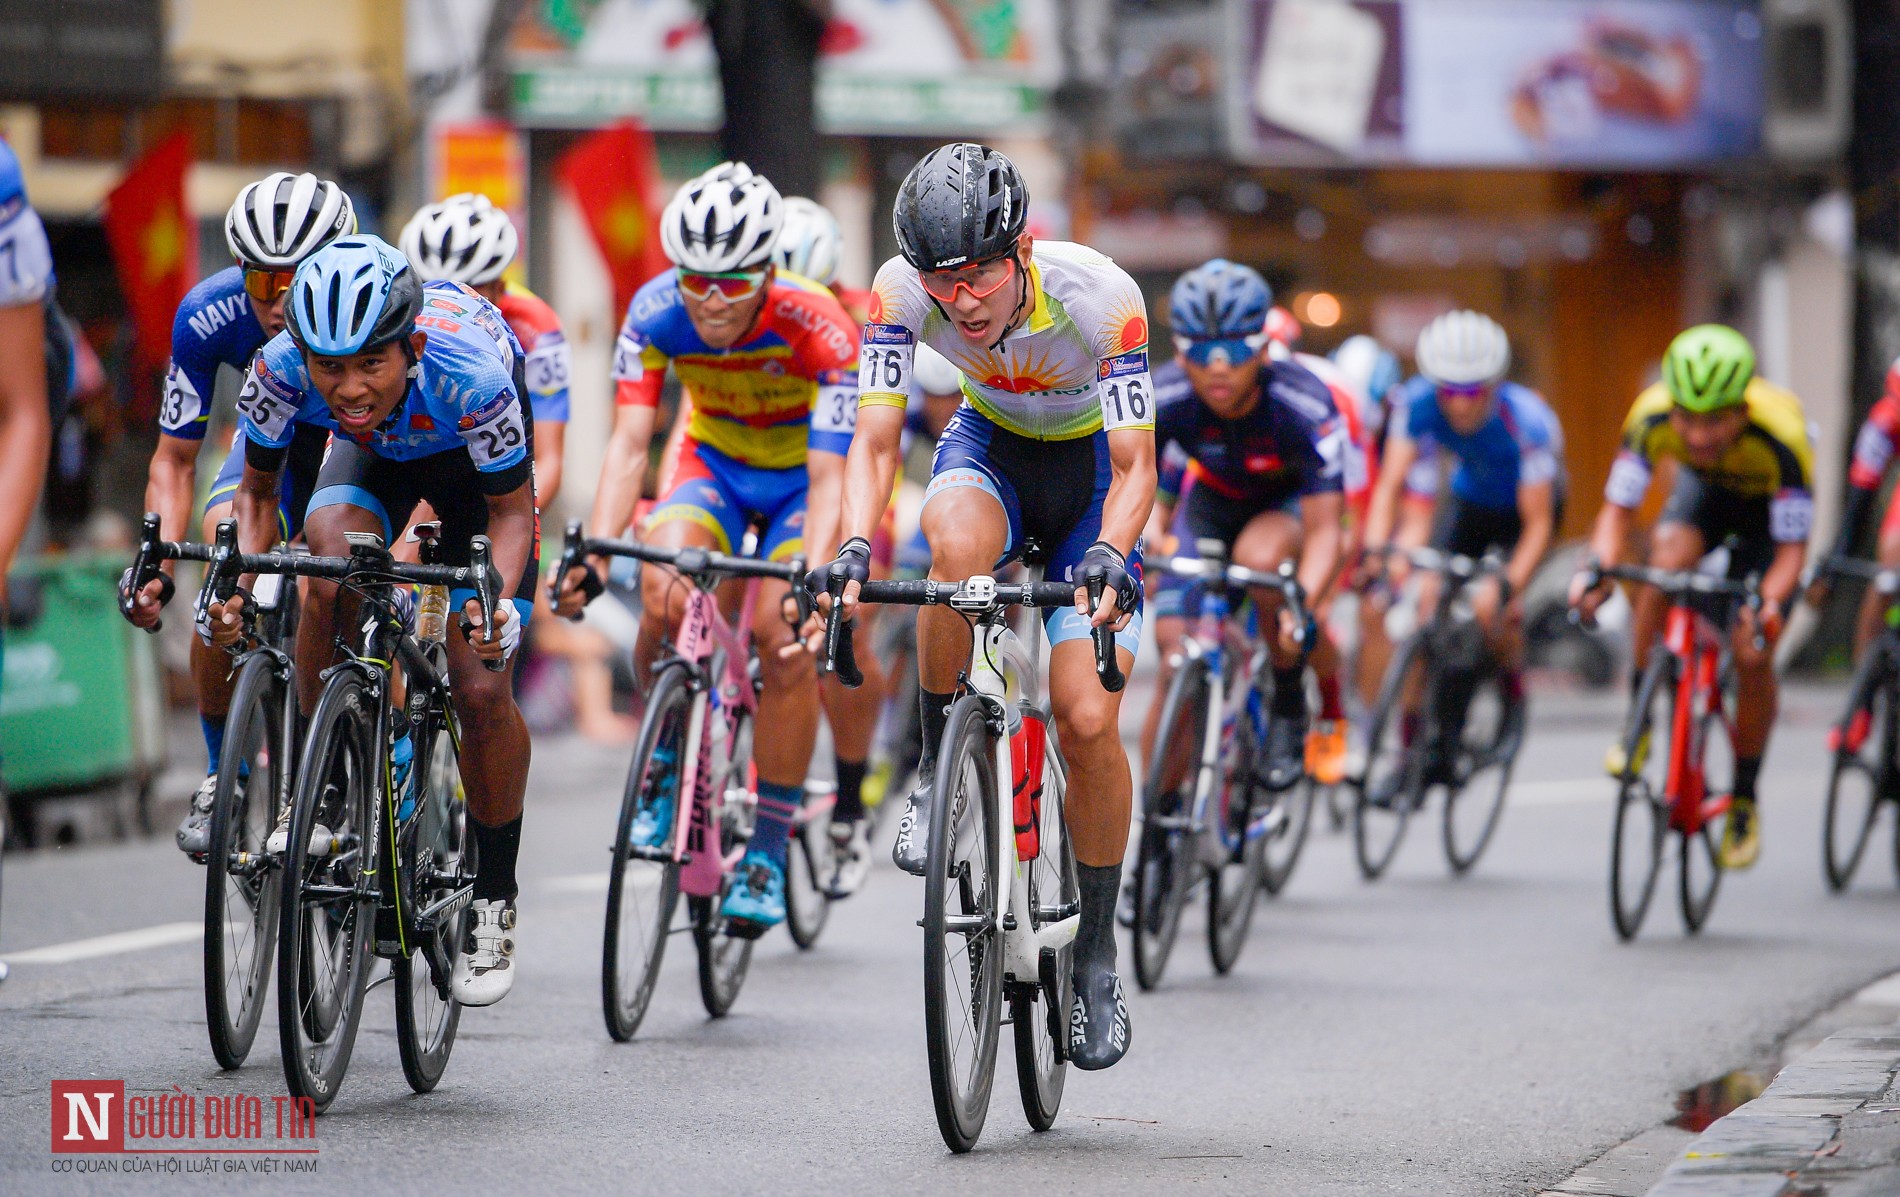 Thưởng thức những hình ảnh nghẹt thở của những chuyên gia xe đạp đua, khi họ đối mặt với những thách thức khó khăn trên đường đua với sự tốc độ và kỹ năng của mình.